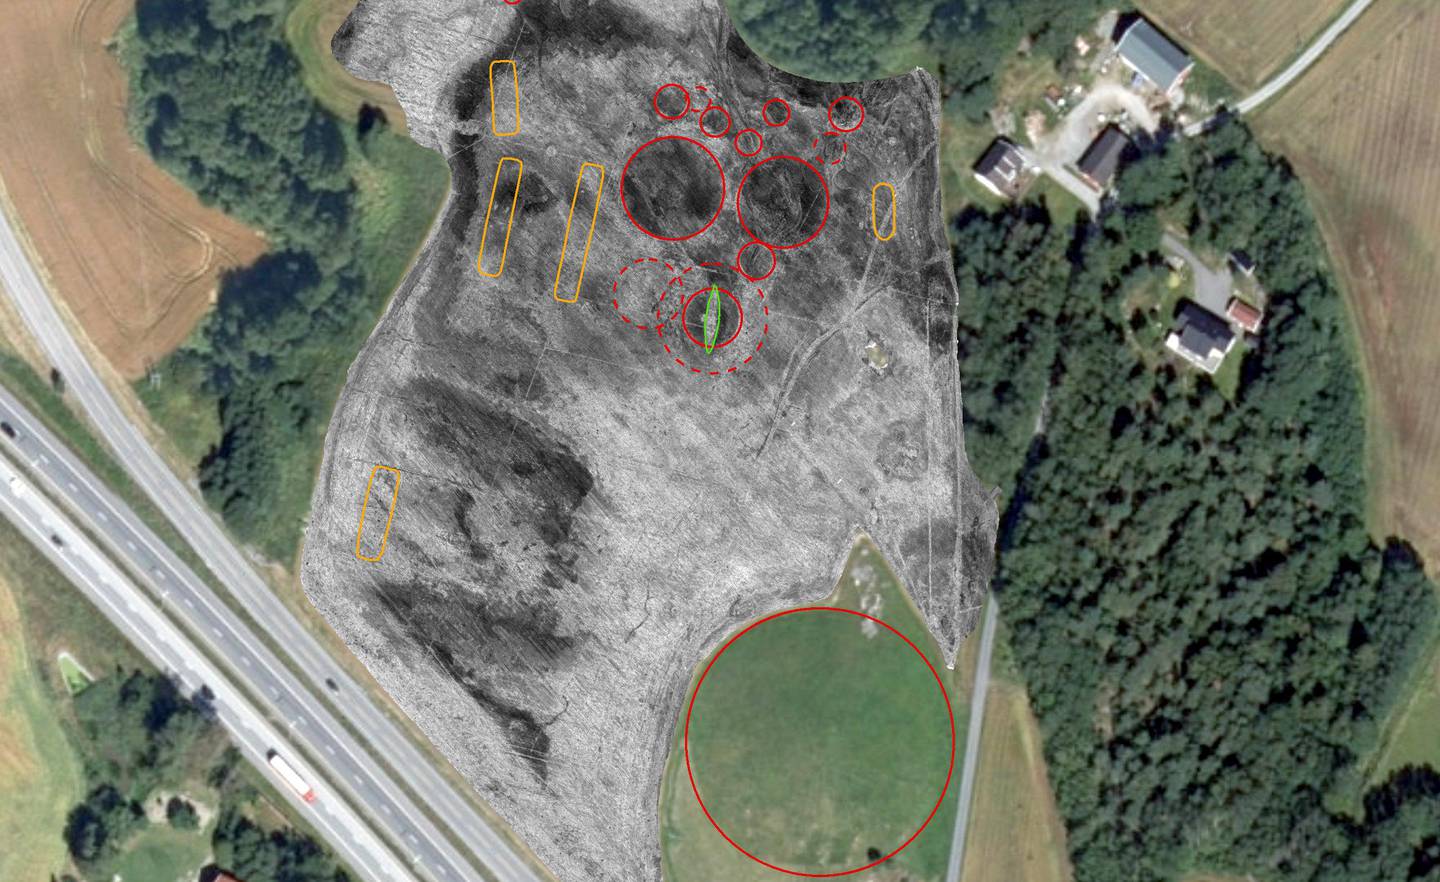 FUNNET: Oversiktsbilde over Jellestad i Halden, der det nå er funnet et vikingskip (markert med grønt omriss midt i bildet). Litt lenger ned ligger den store gravhaugen Jellshaugen (markert med stor rød ring).